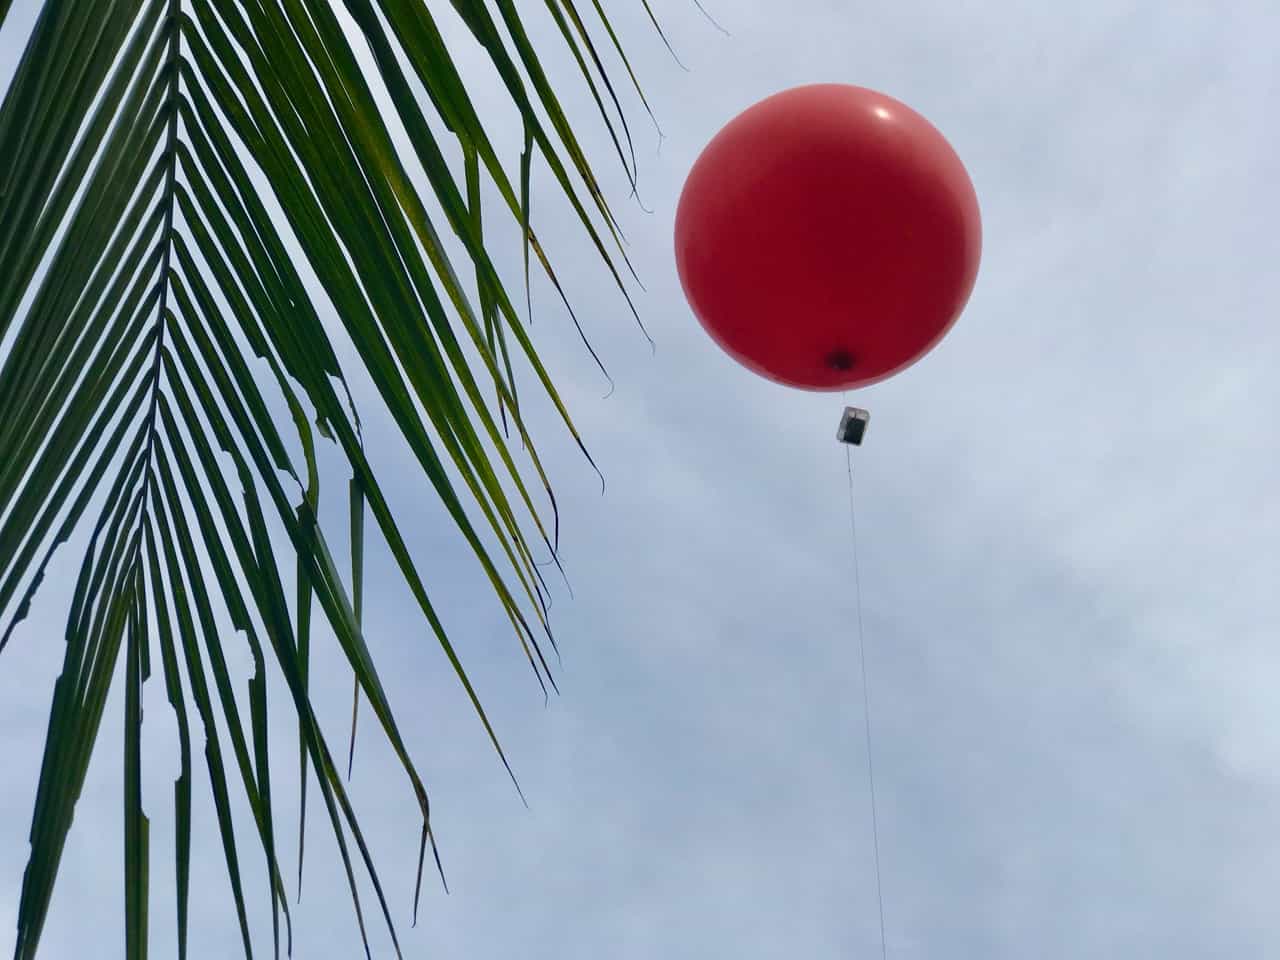 Balloon IoT Environmental Sensing Takes to the Air